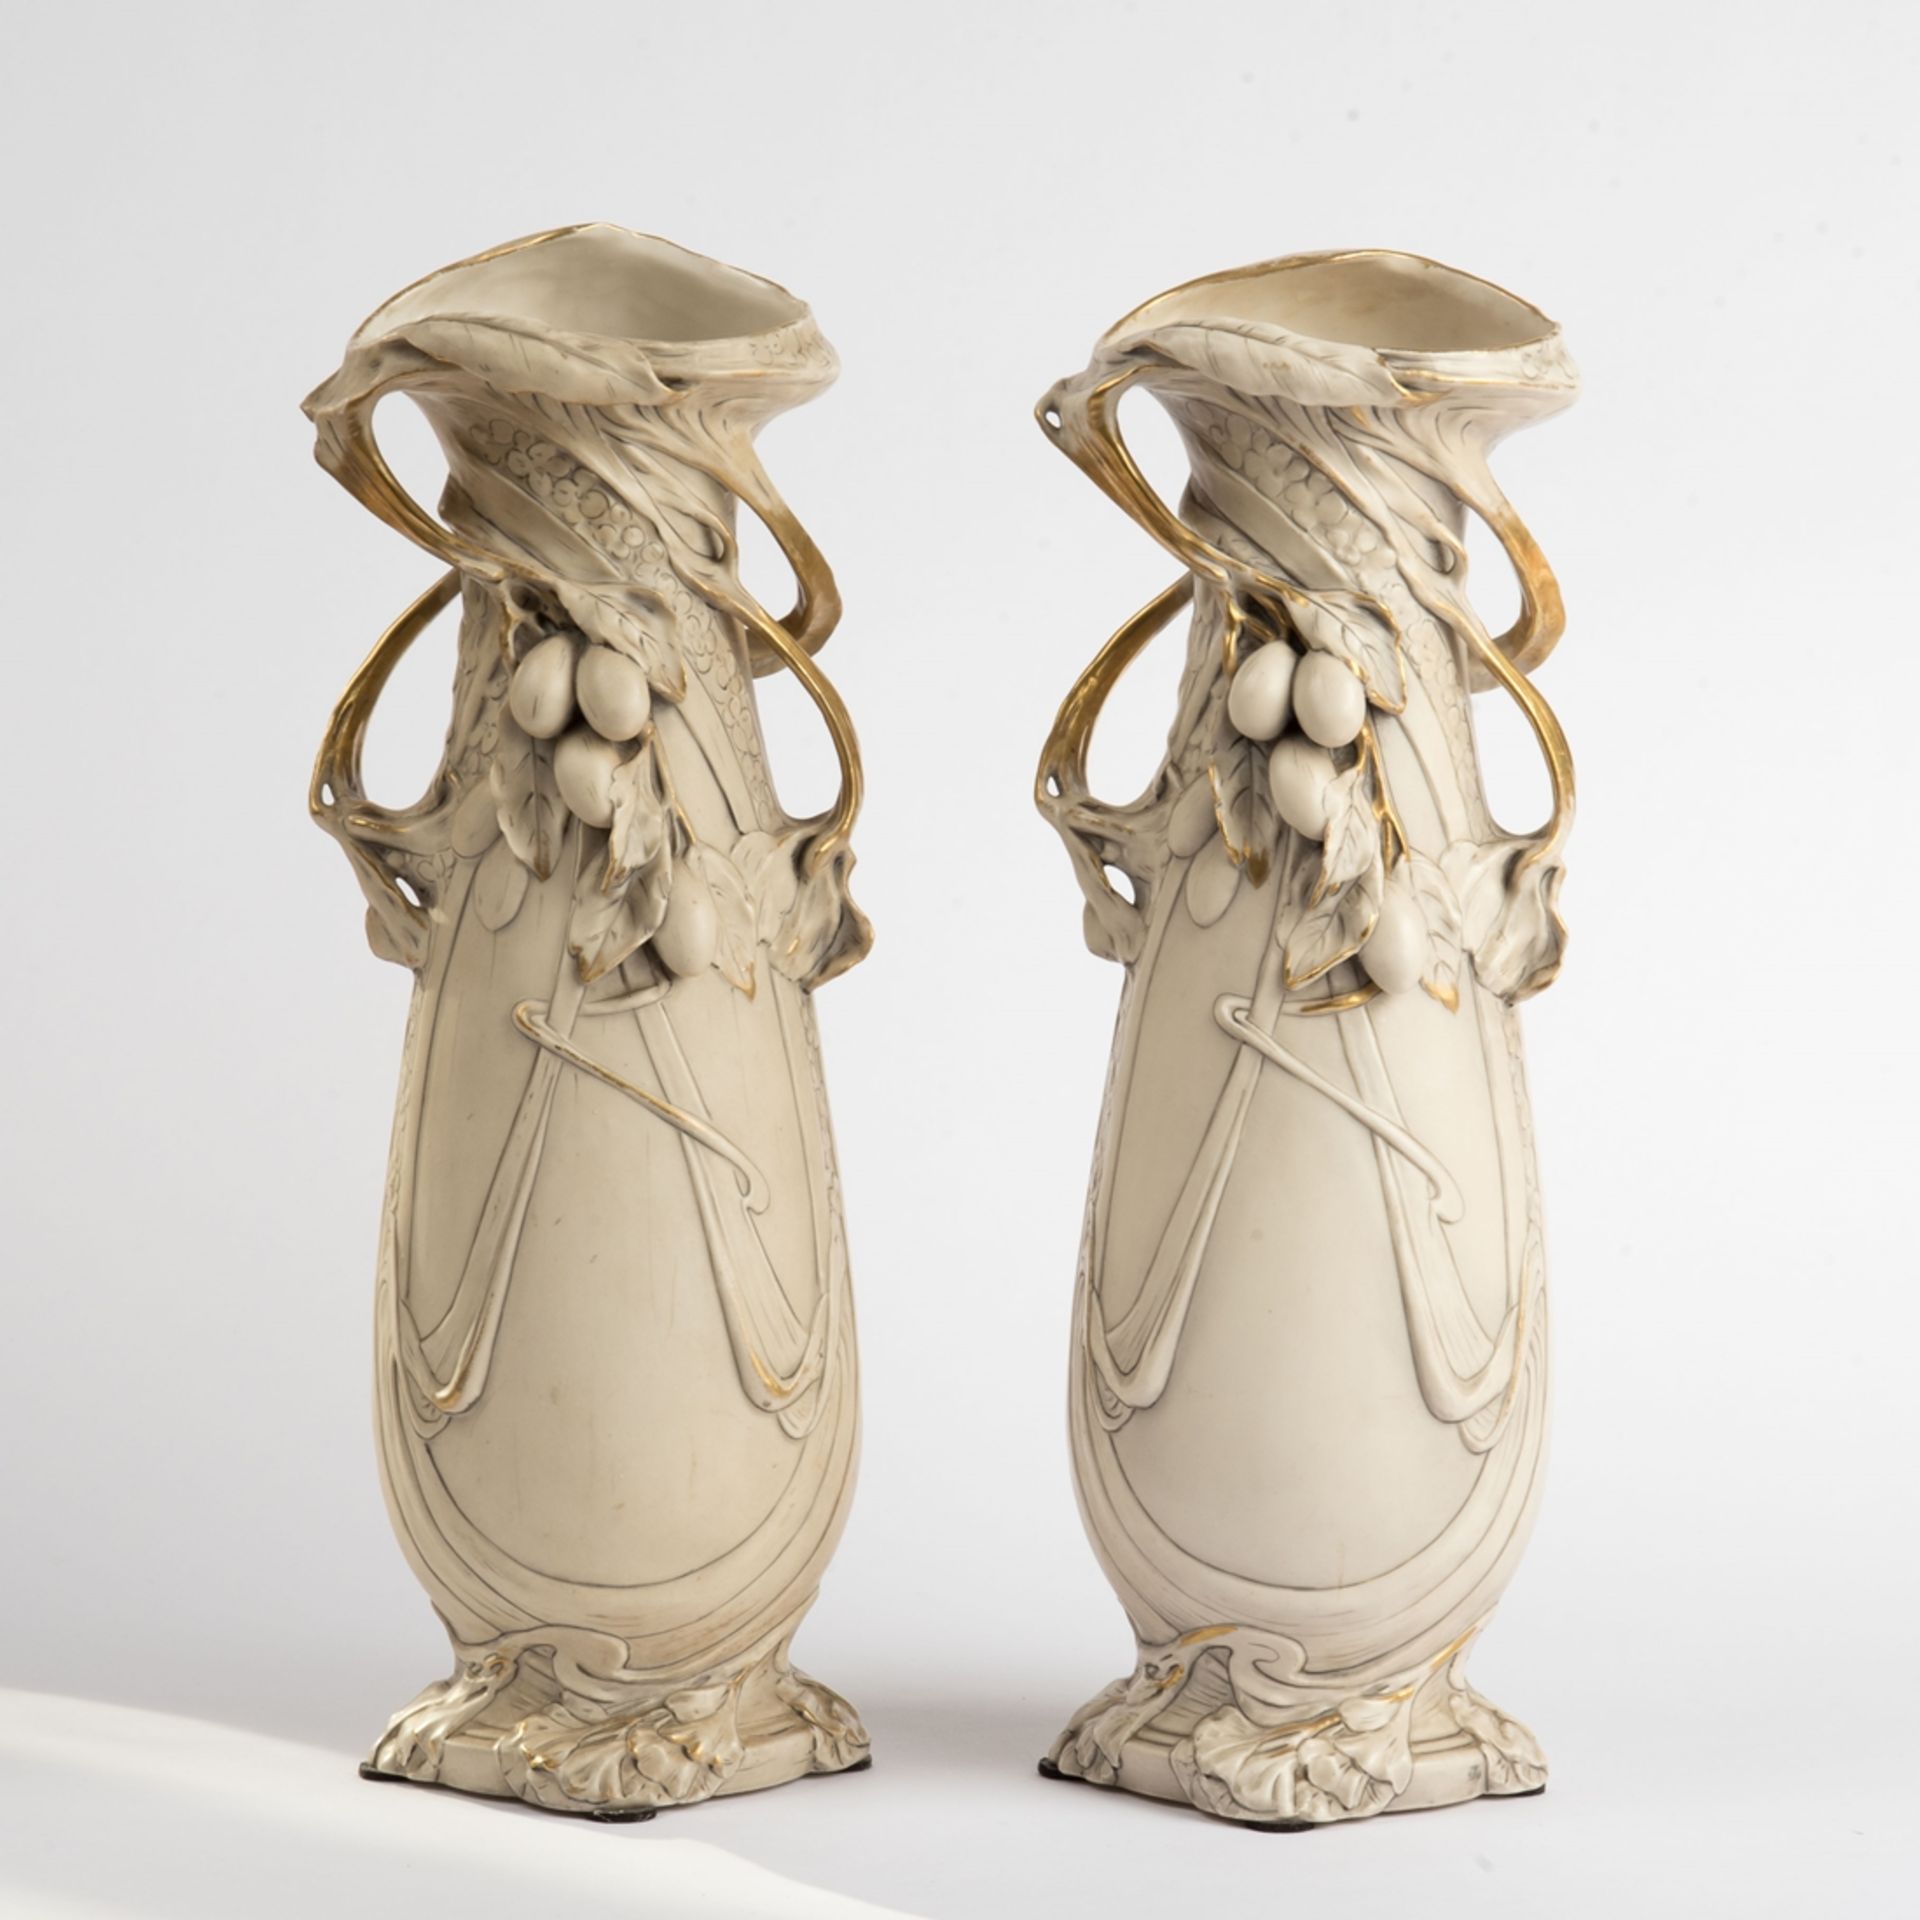 Royal  Dux , Paar Vasen, Jugendstil um 1905-20